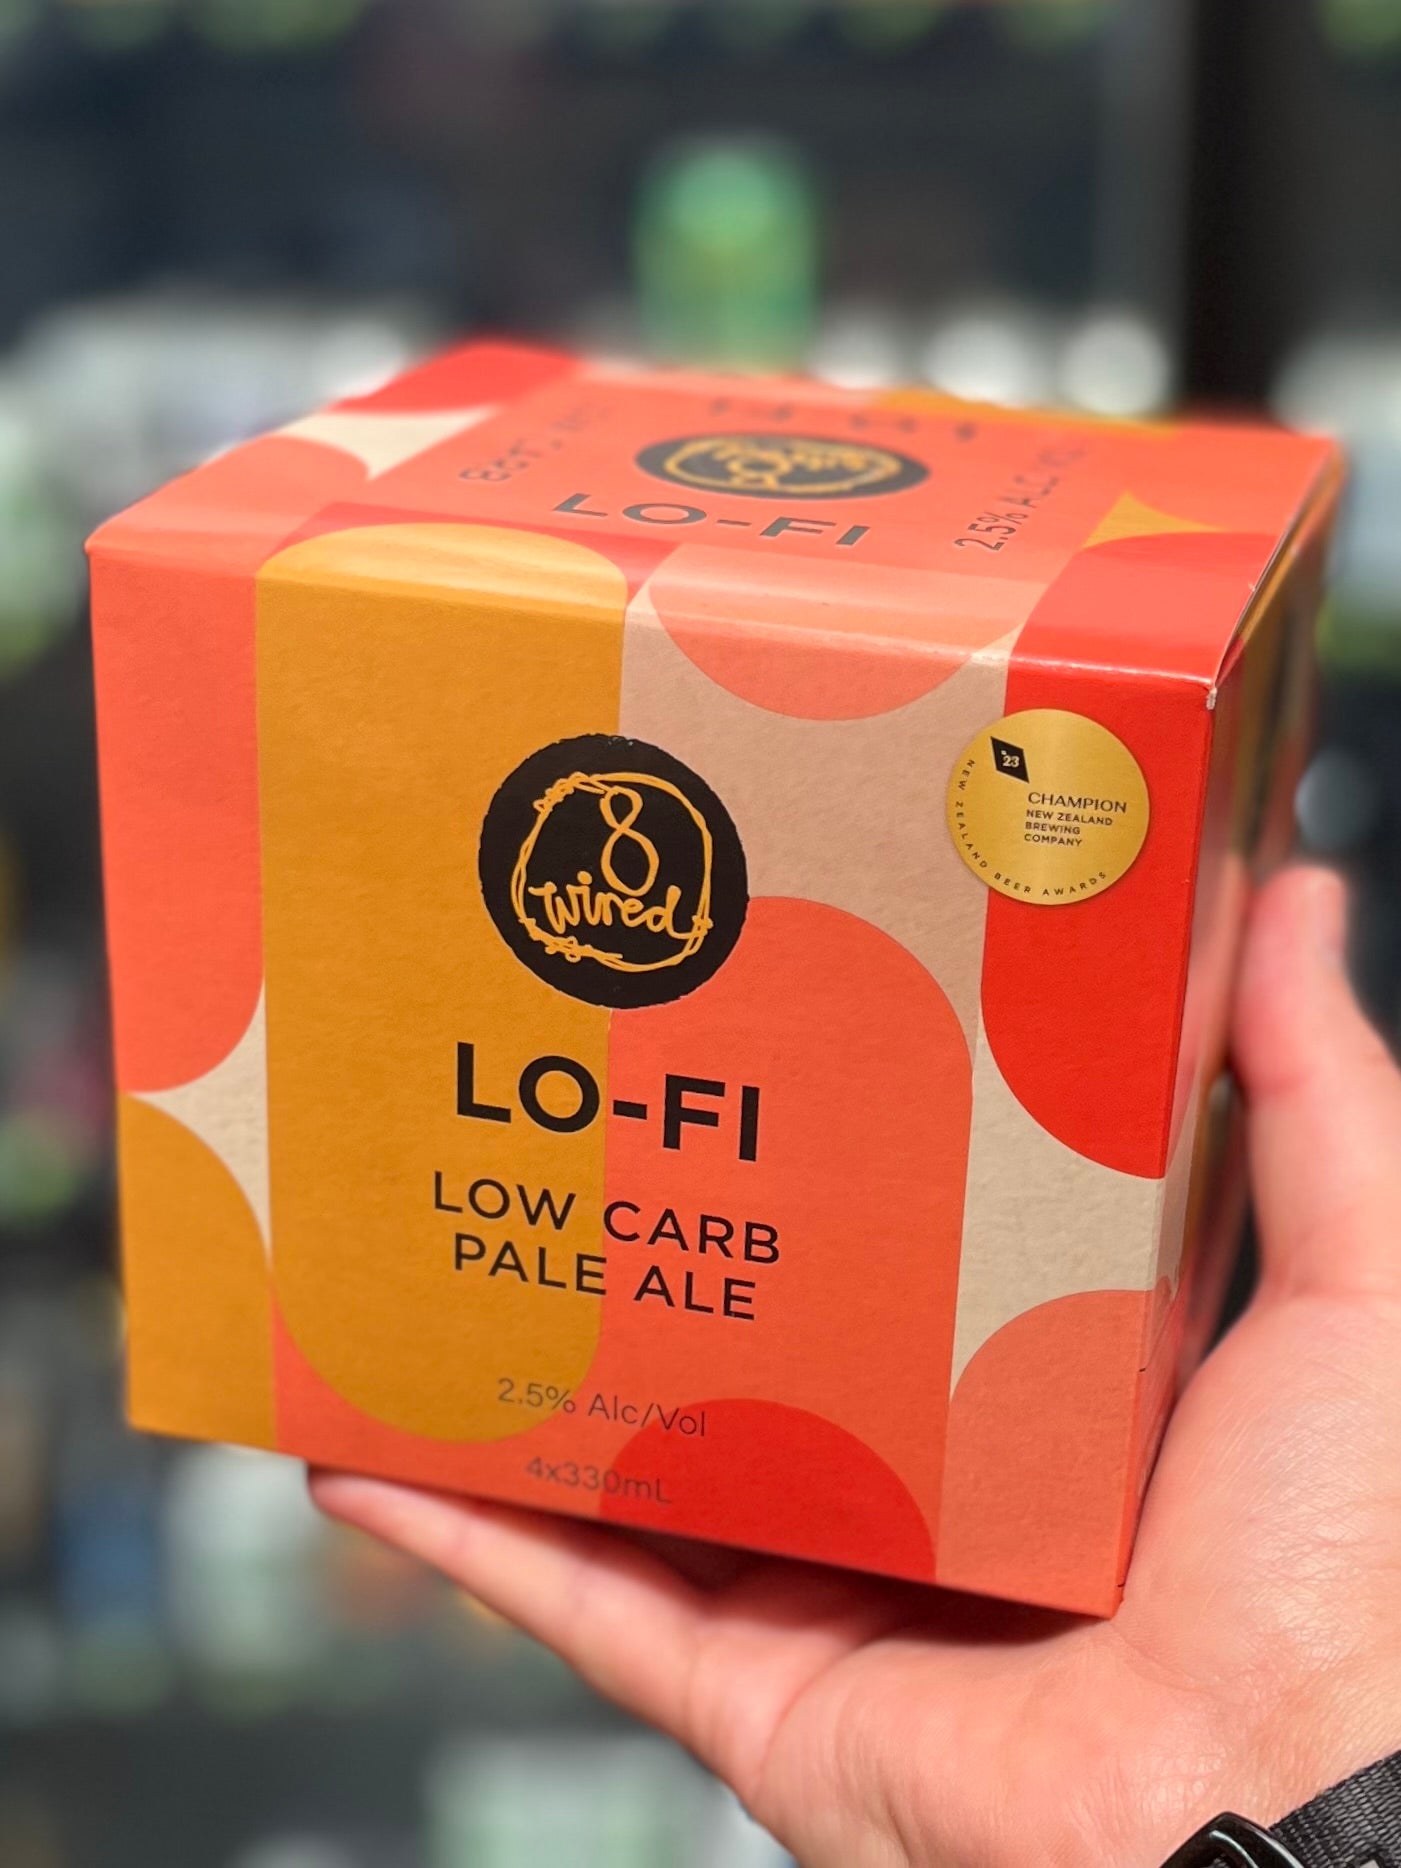 Lo-Fi Low Carb Pale Ale